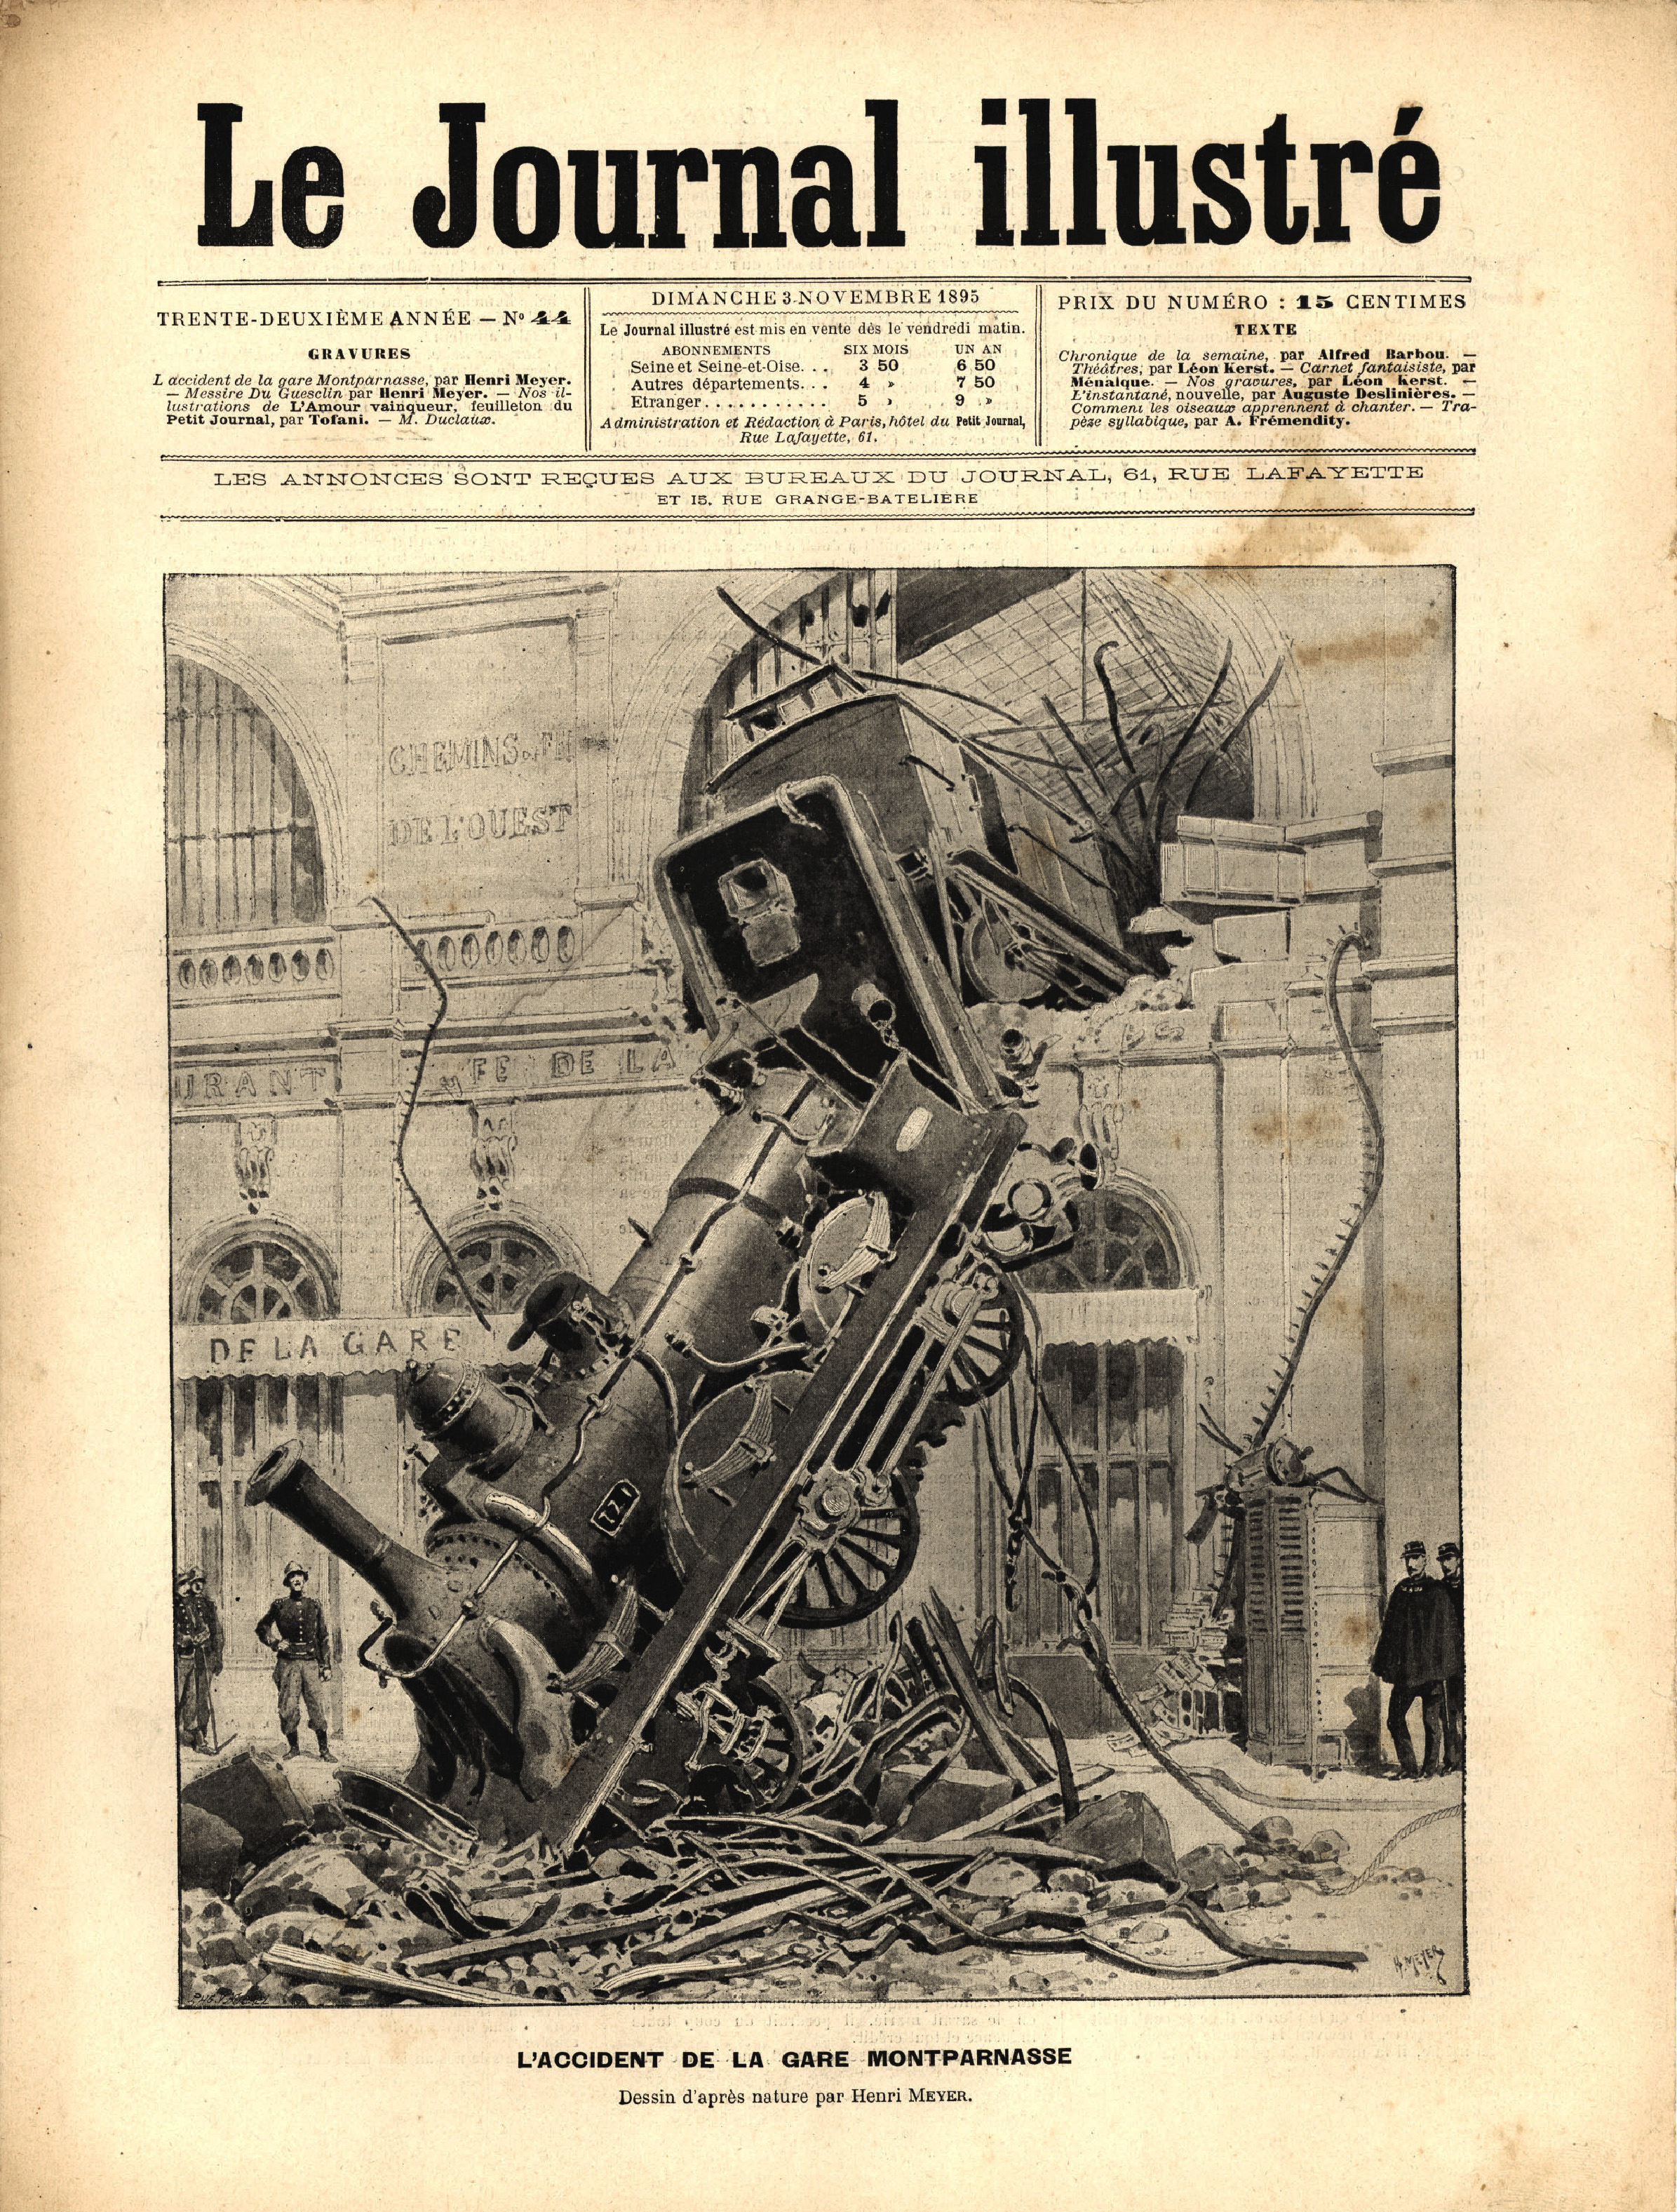 Le Journal illustré, 3 novembre 1895. CCGPF Fonds cheminot